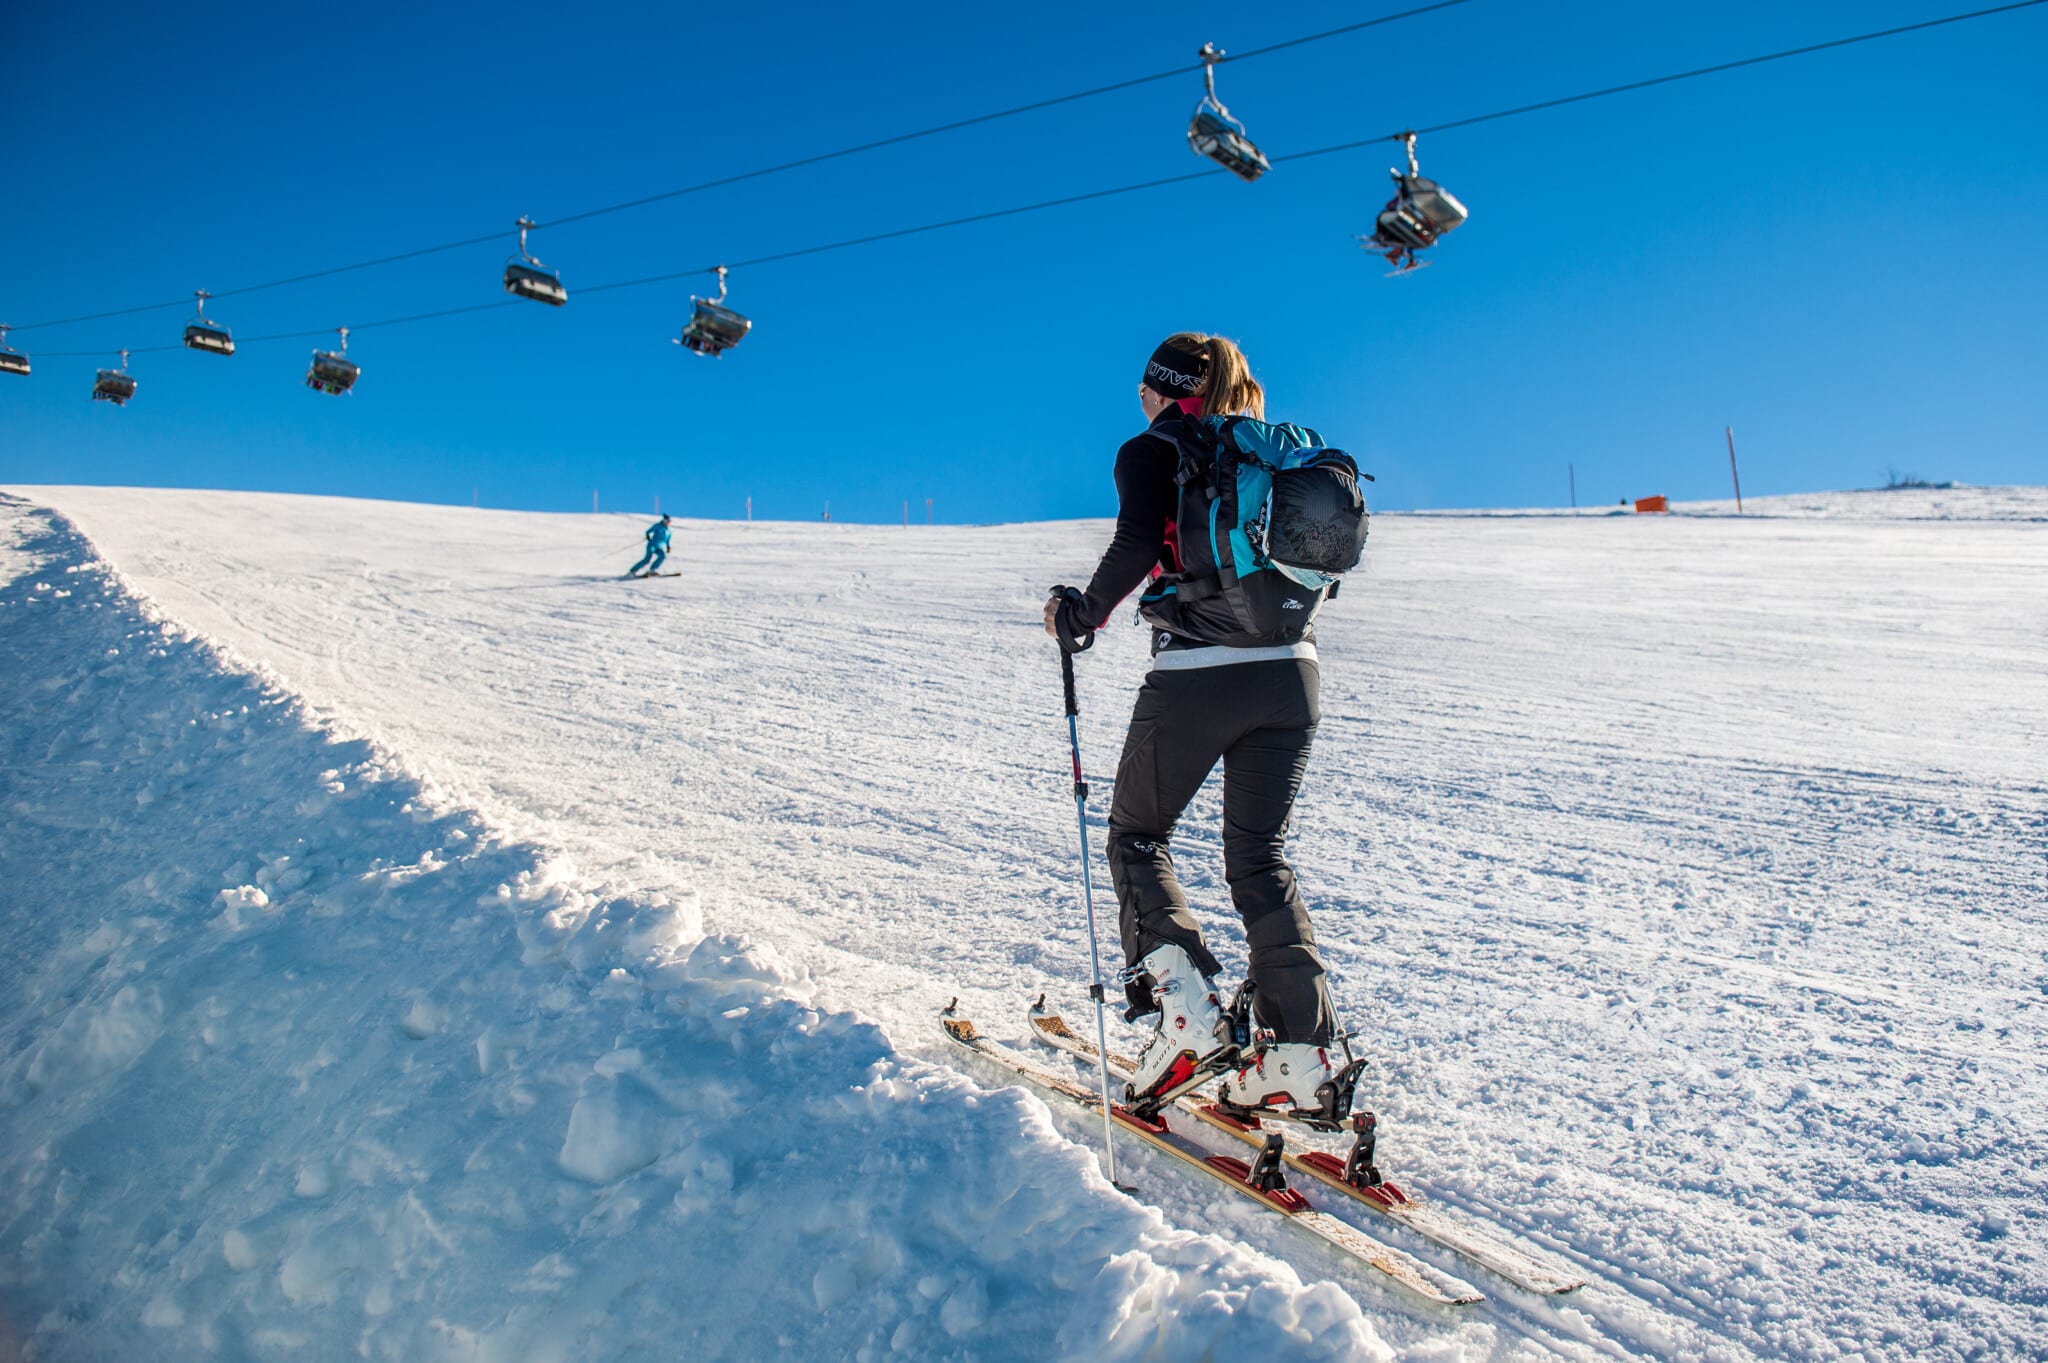 Nicht nur Tourengeher sondern auch Skifahrer sind herzlich willkommen, die Lifte stehen jedoch bis zum 24. Dezember still.